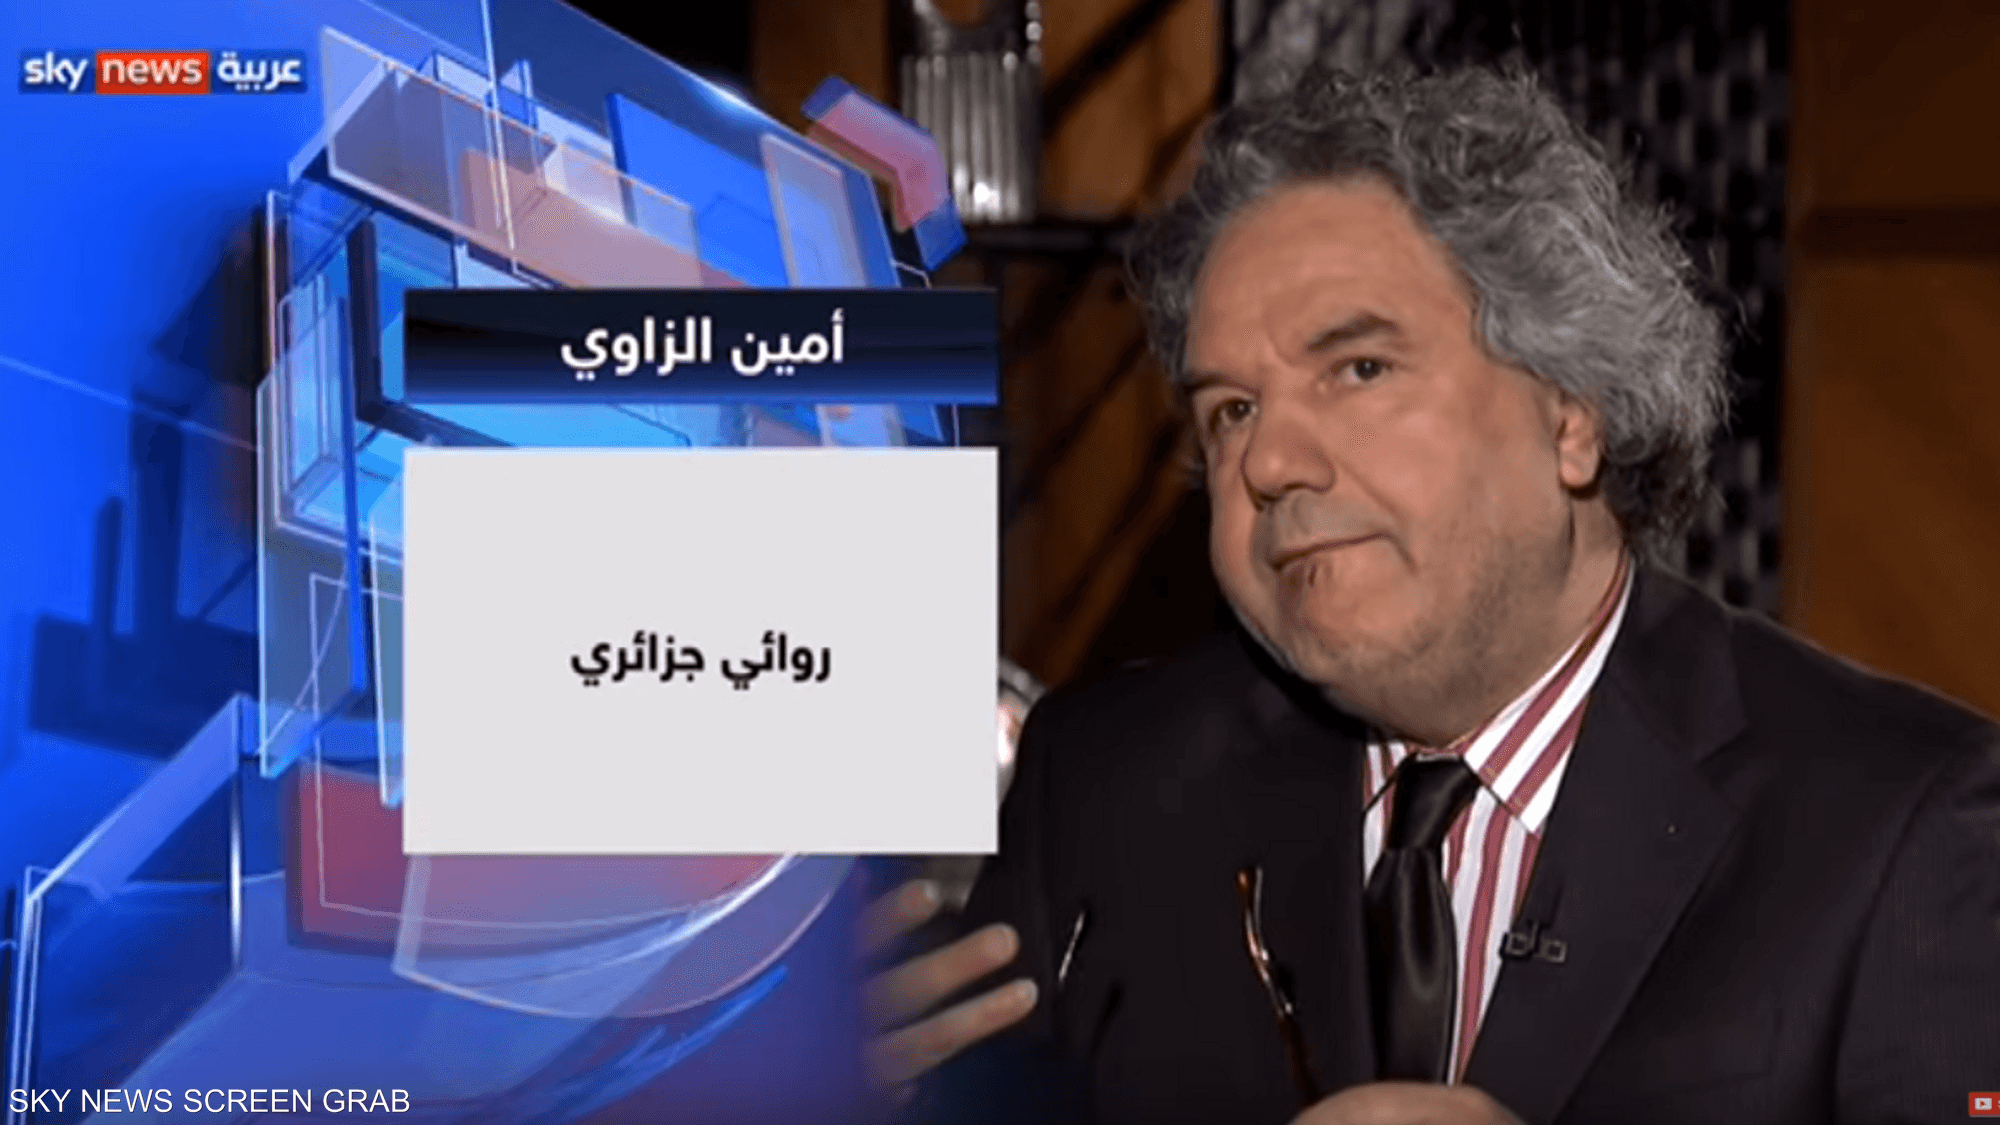 الروائي الجزائري أمين الزاوي ضيف حديث العرب